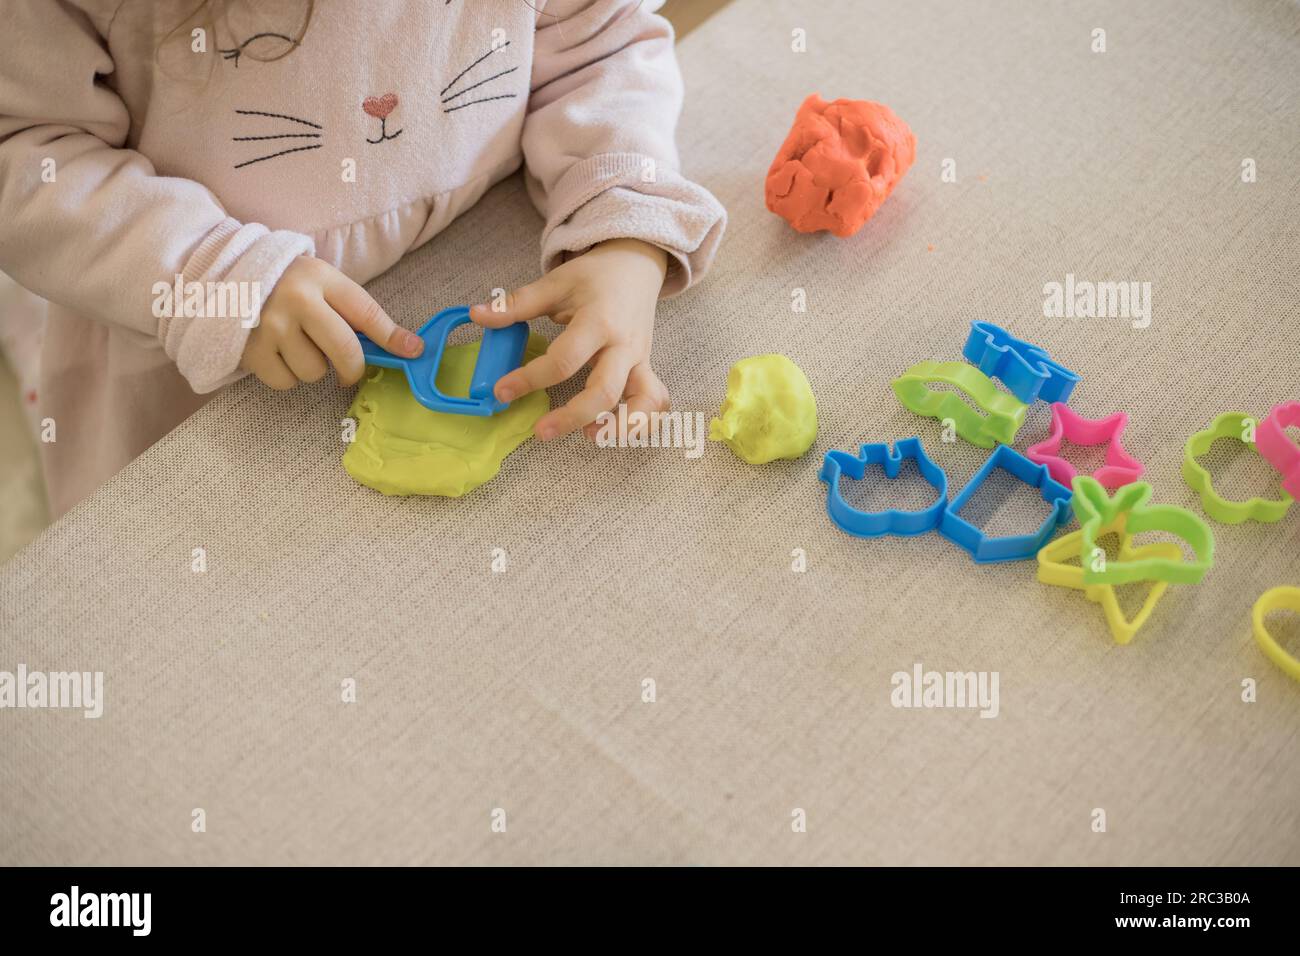 Enfant caucasien, deux ou trois ans, jouant et exerçant la motricité fine avec ses mains, avec de l'argile et de la plasticine colorée. Banque D'Images